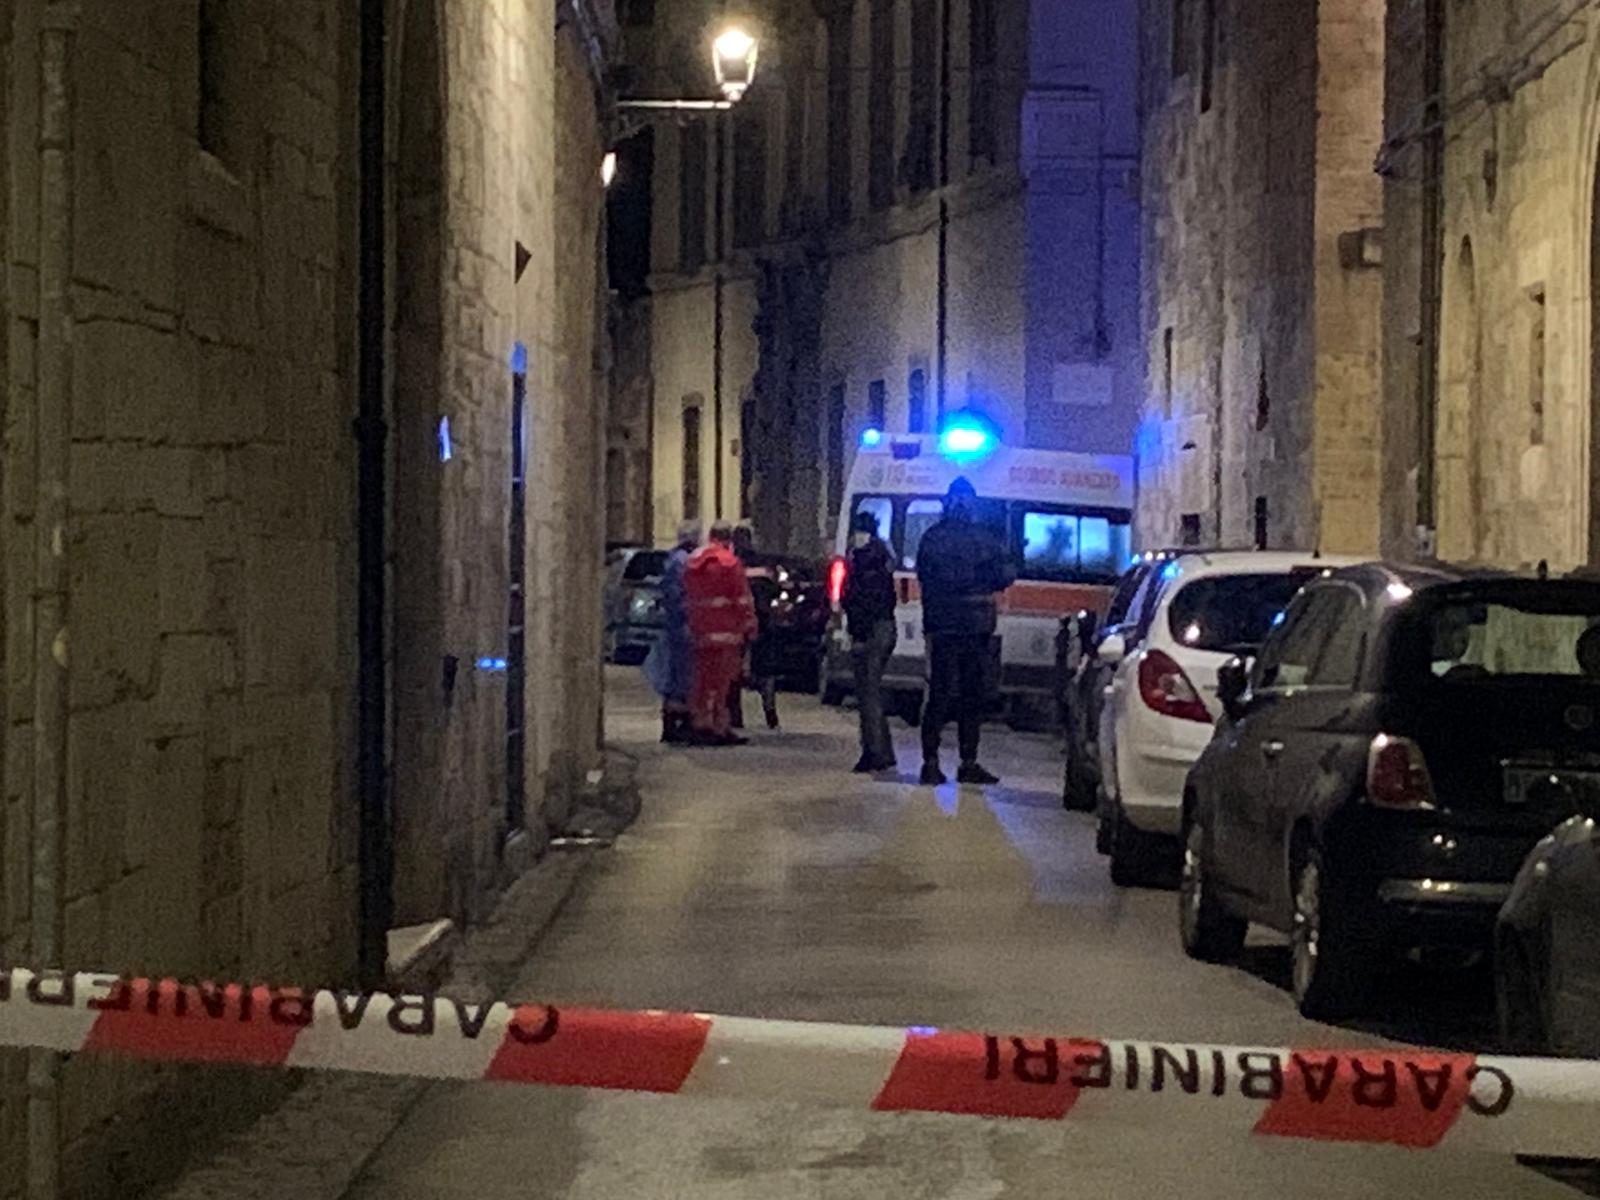 Ascoli Piceno – Cadavere in strada, ipotesi accoltellamento